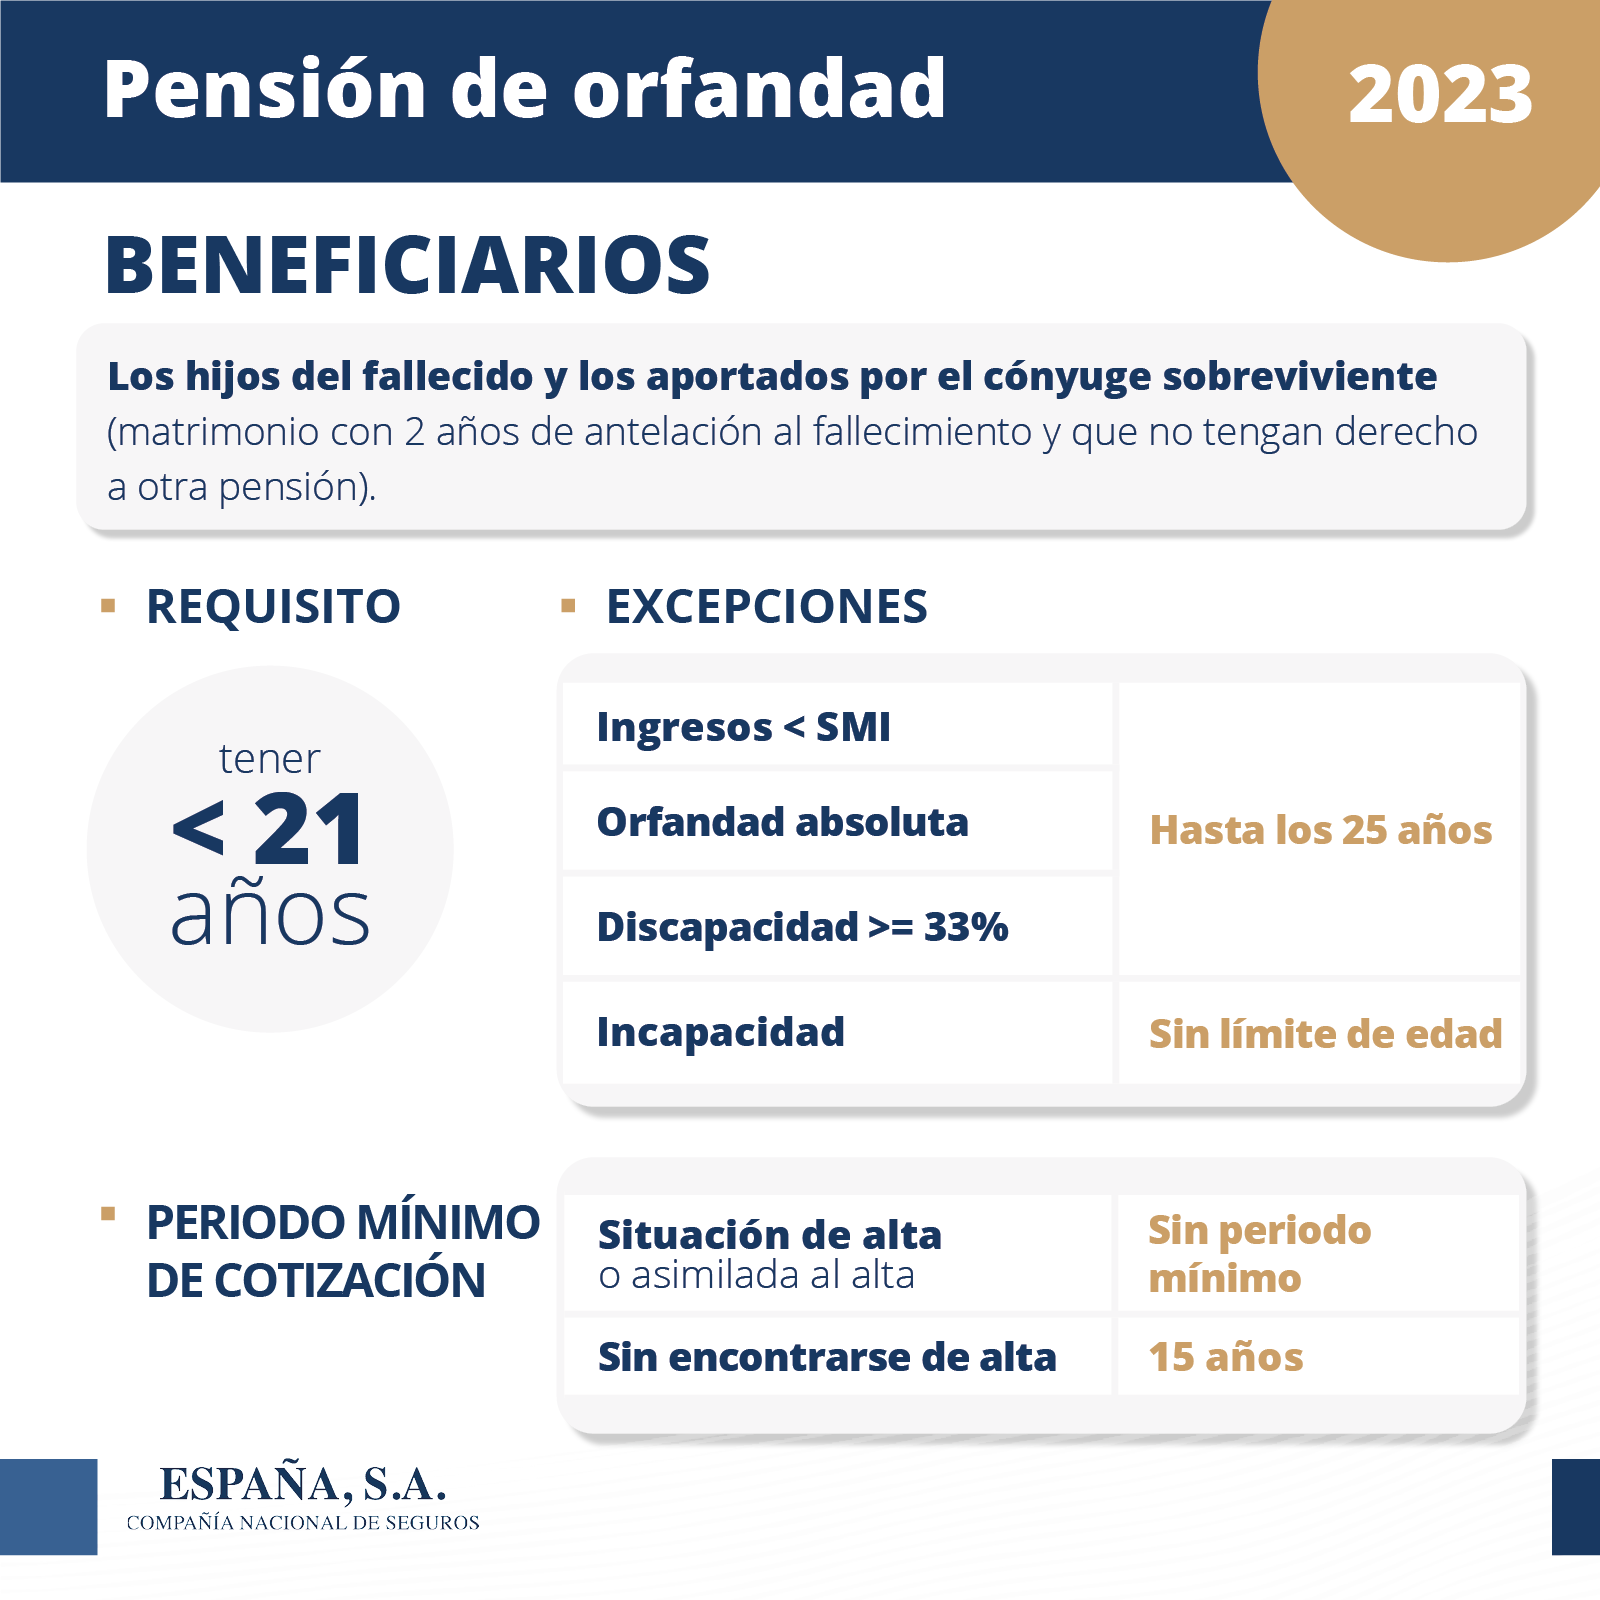 Pensión de orfandad 2023